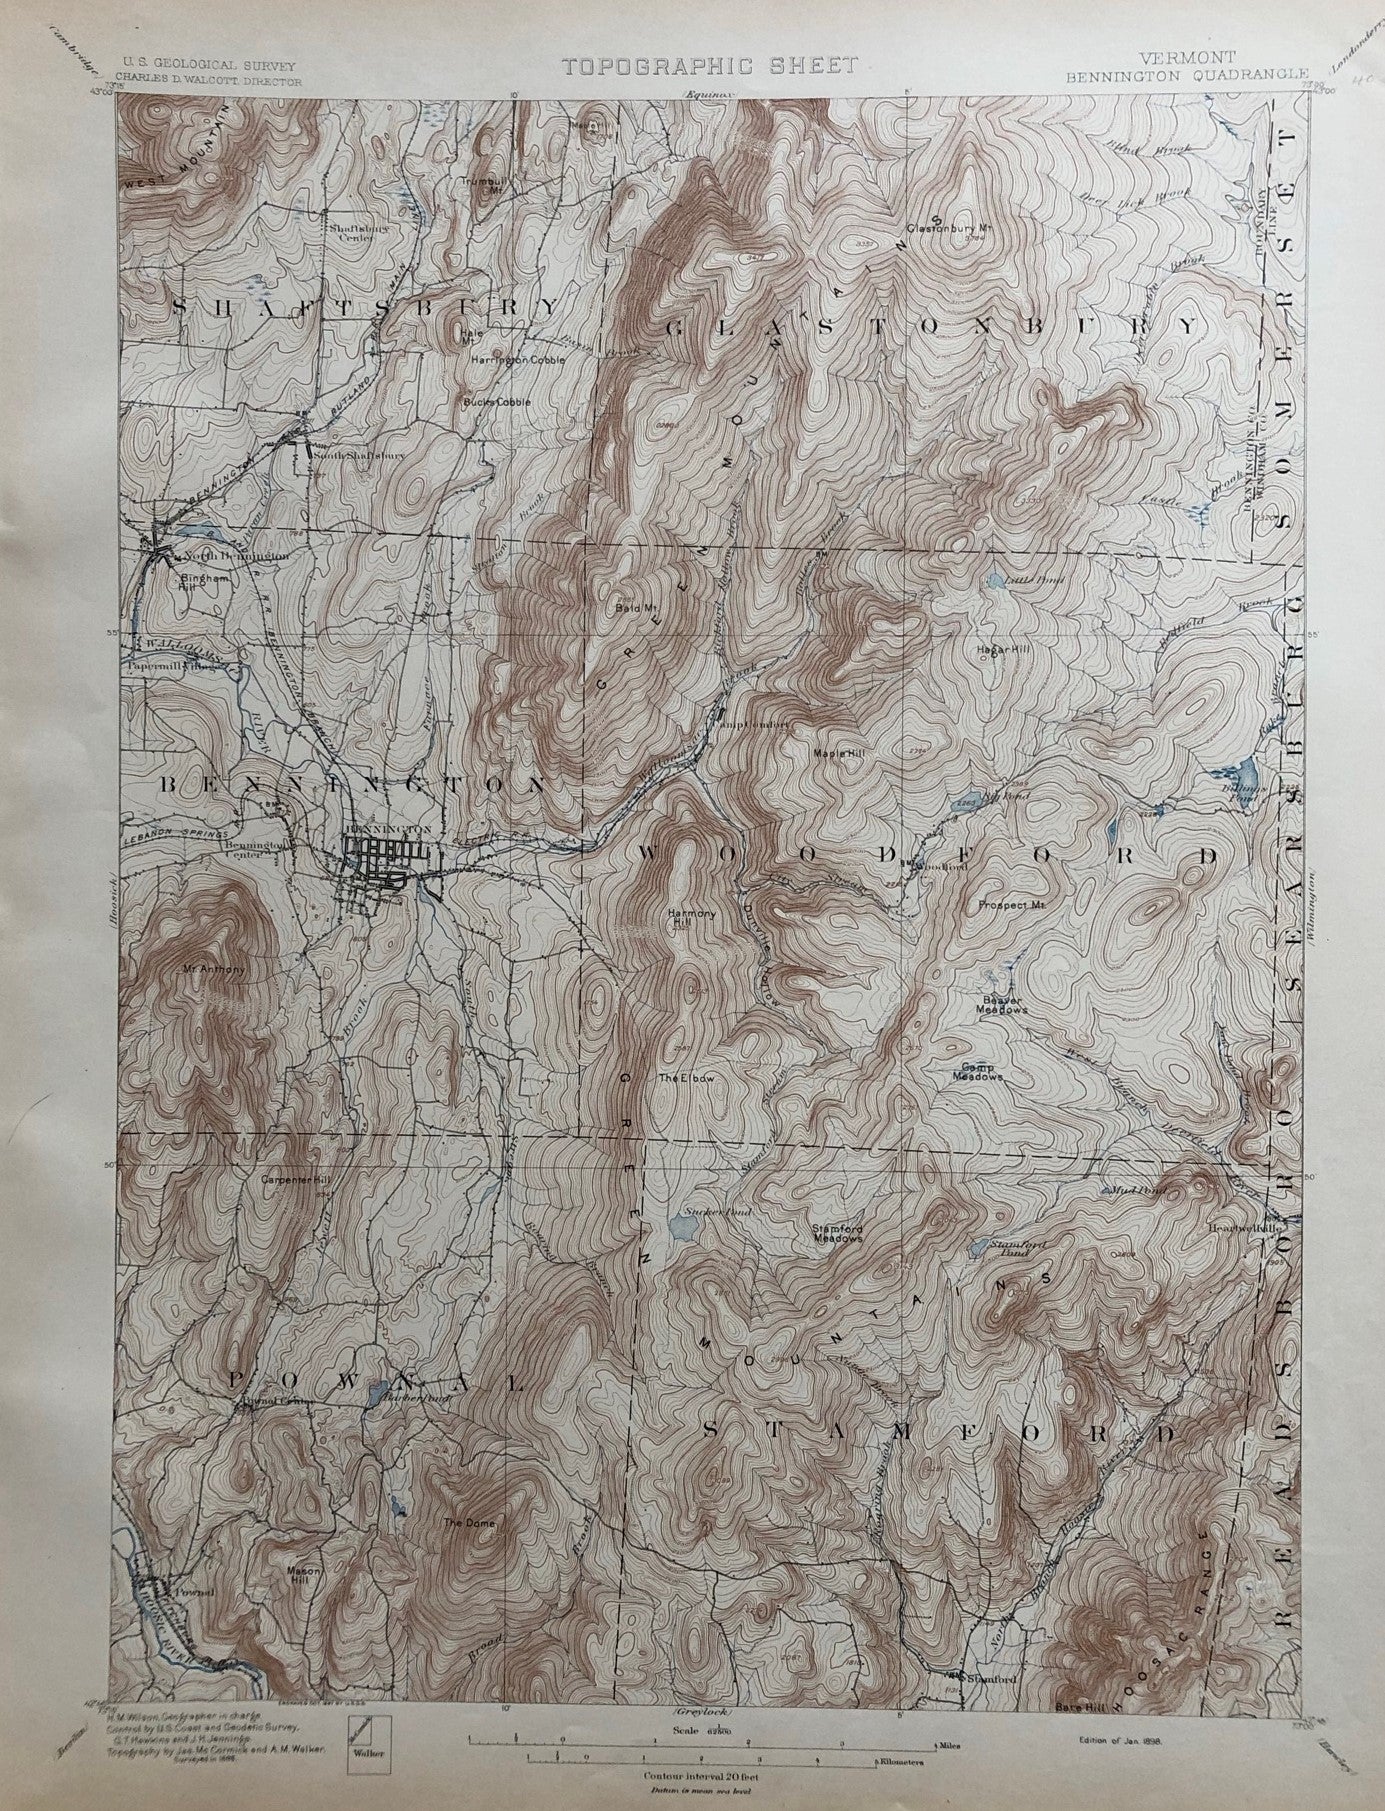 Genuine-Antique-Topographic-map-Bennington-Vermont-Quadrangle-VT-Antique-Topo-Map-Antique-Geological-&-Topographical-Maps-Vermont-1898-USGS-Maps-Of-Antiquity-1800s-19th-century